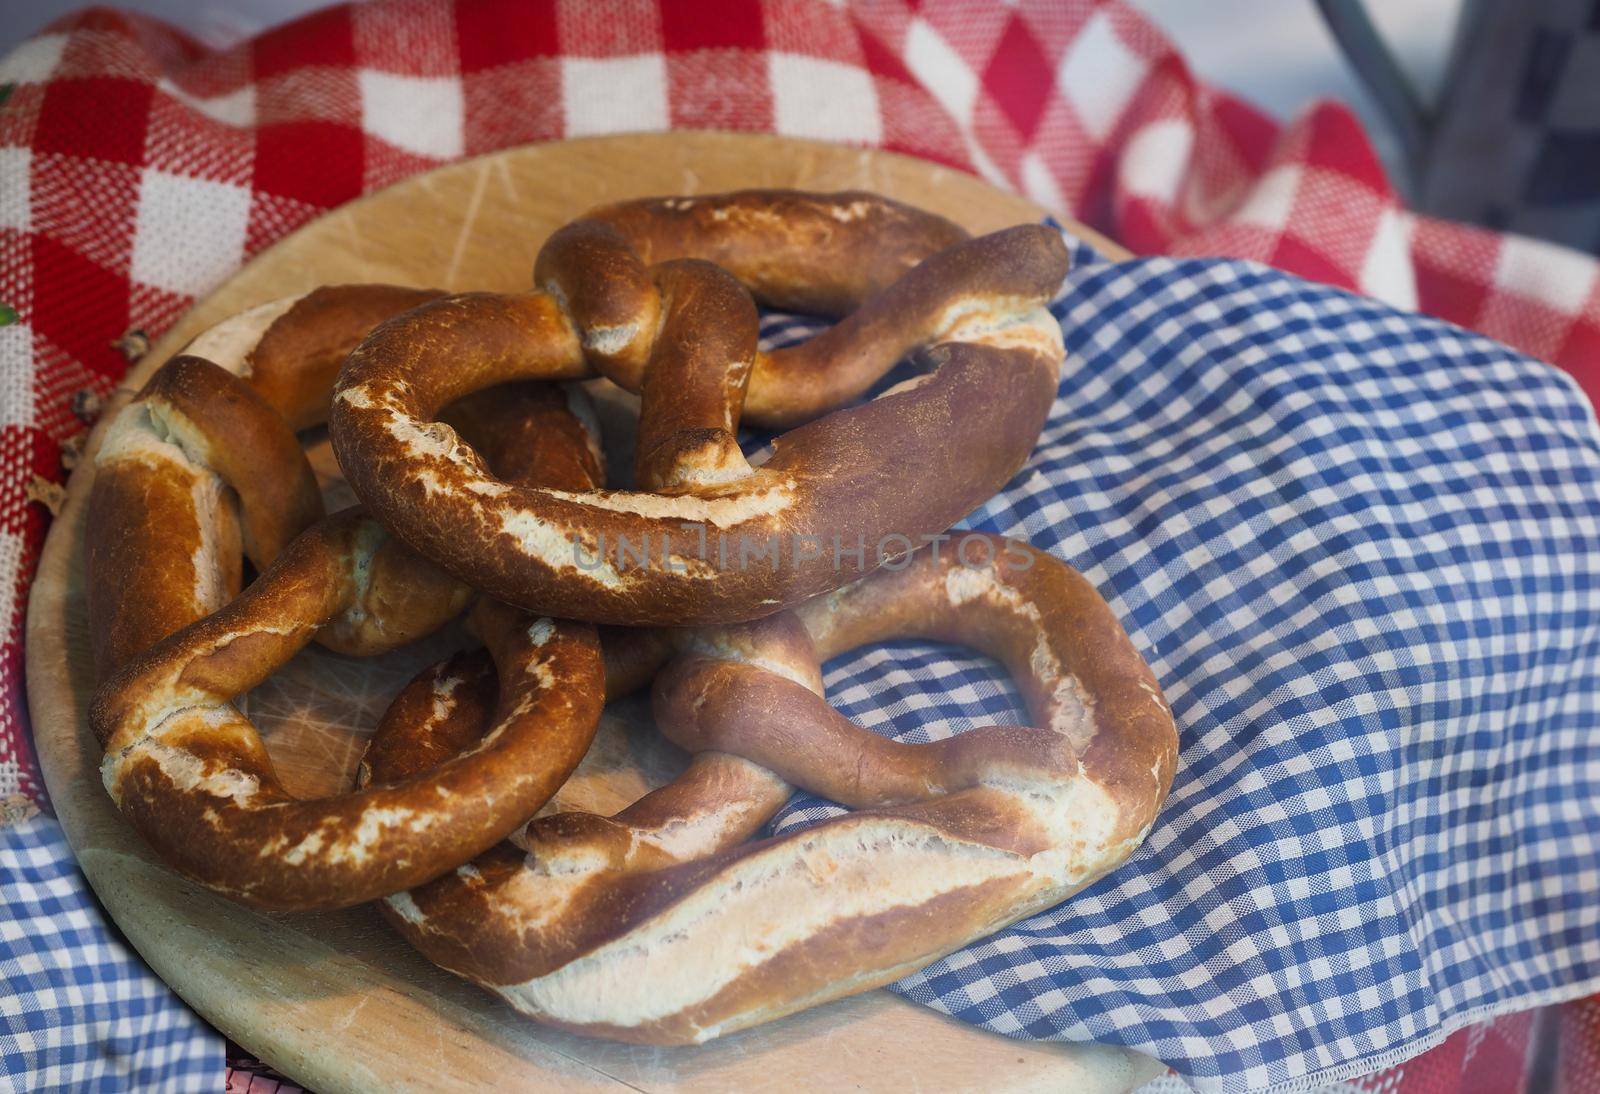 pretzel bread aka Brezel or bretzel baked food